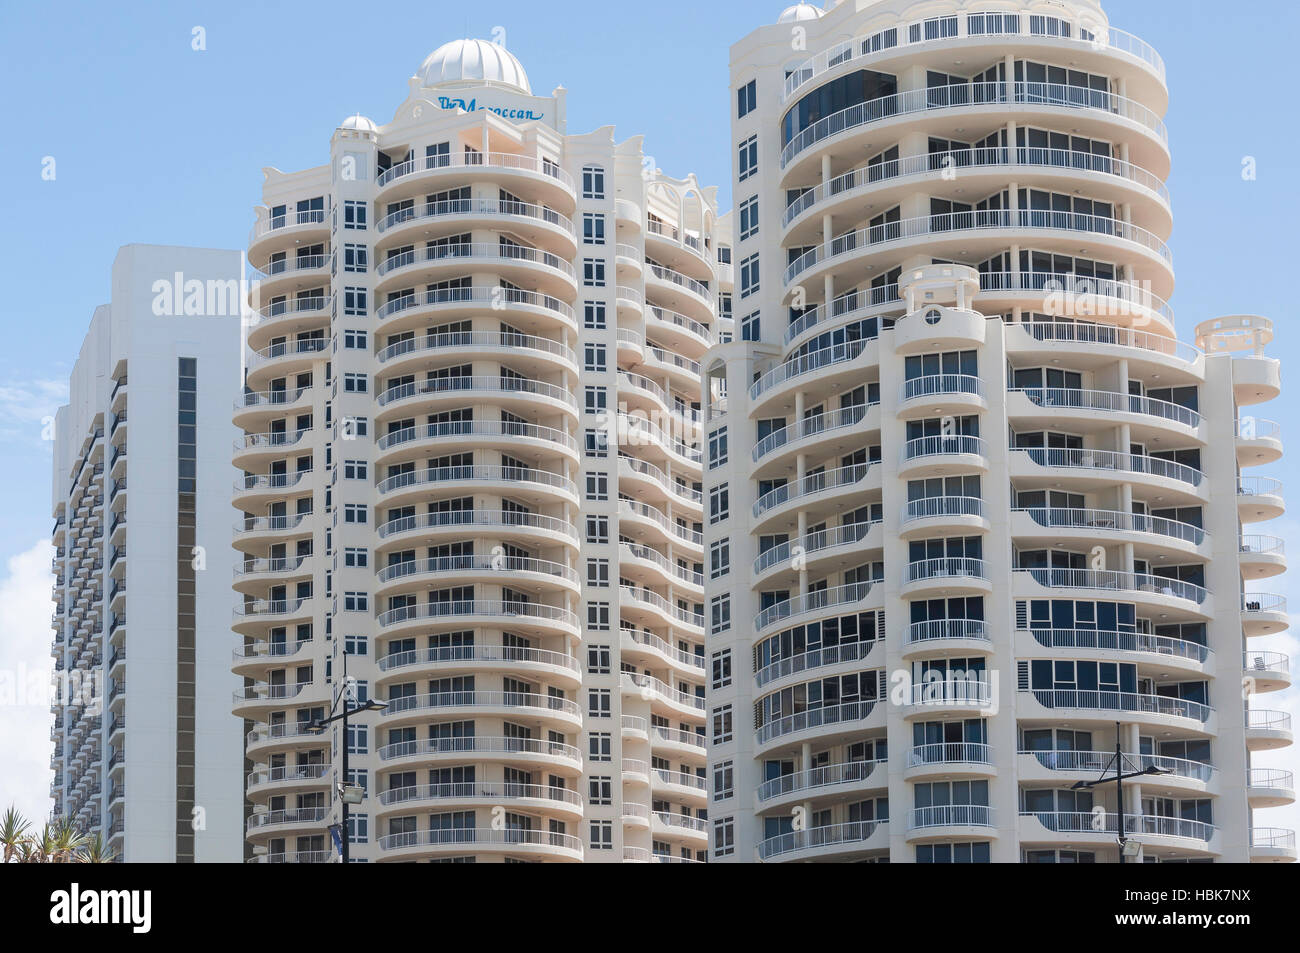 Le Resort marocain les immeubles à appartements, Surfers Paradise, ville de Gold Coast, Queensland, Australie Banque D'Images